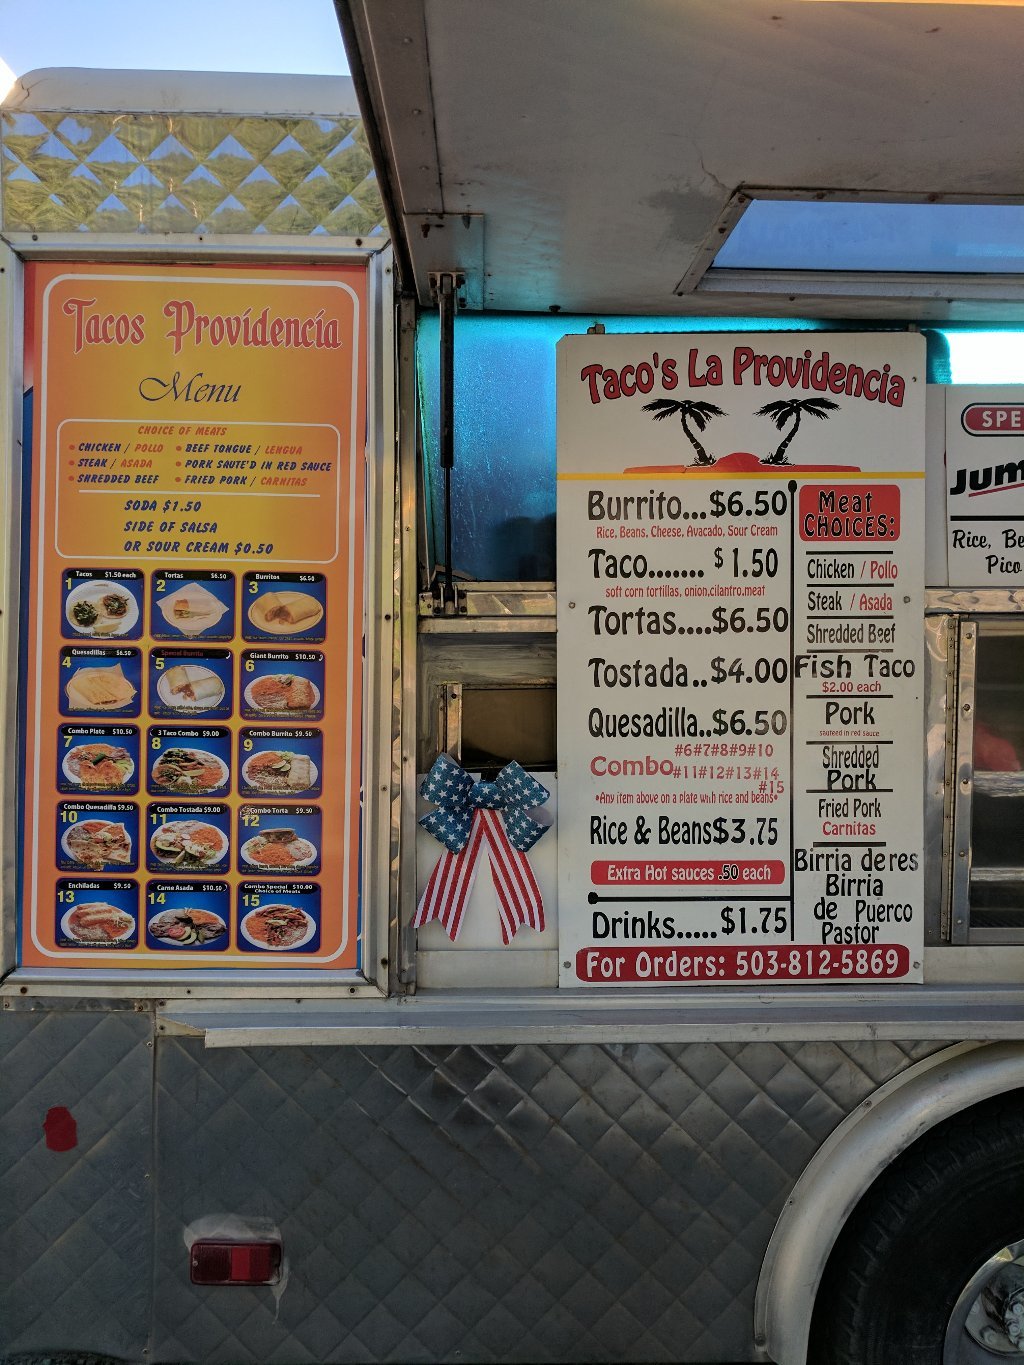 Tacos la Providencia